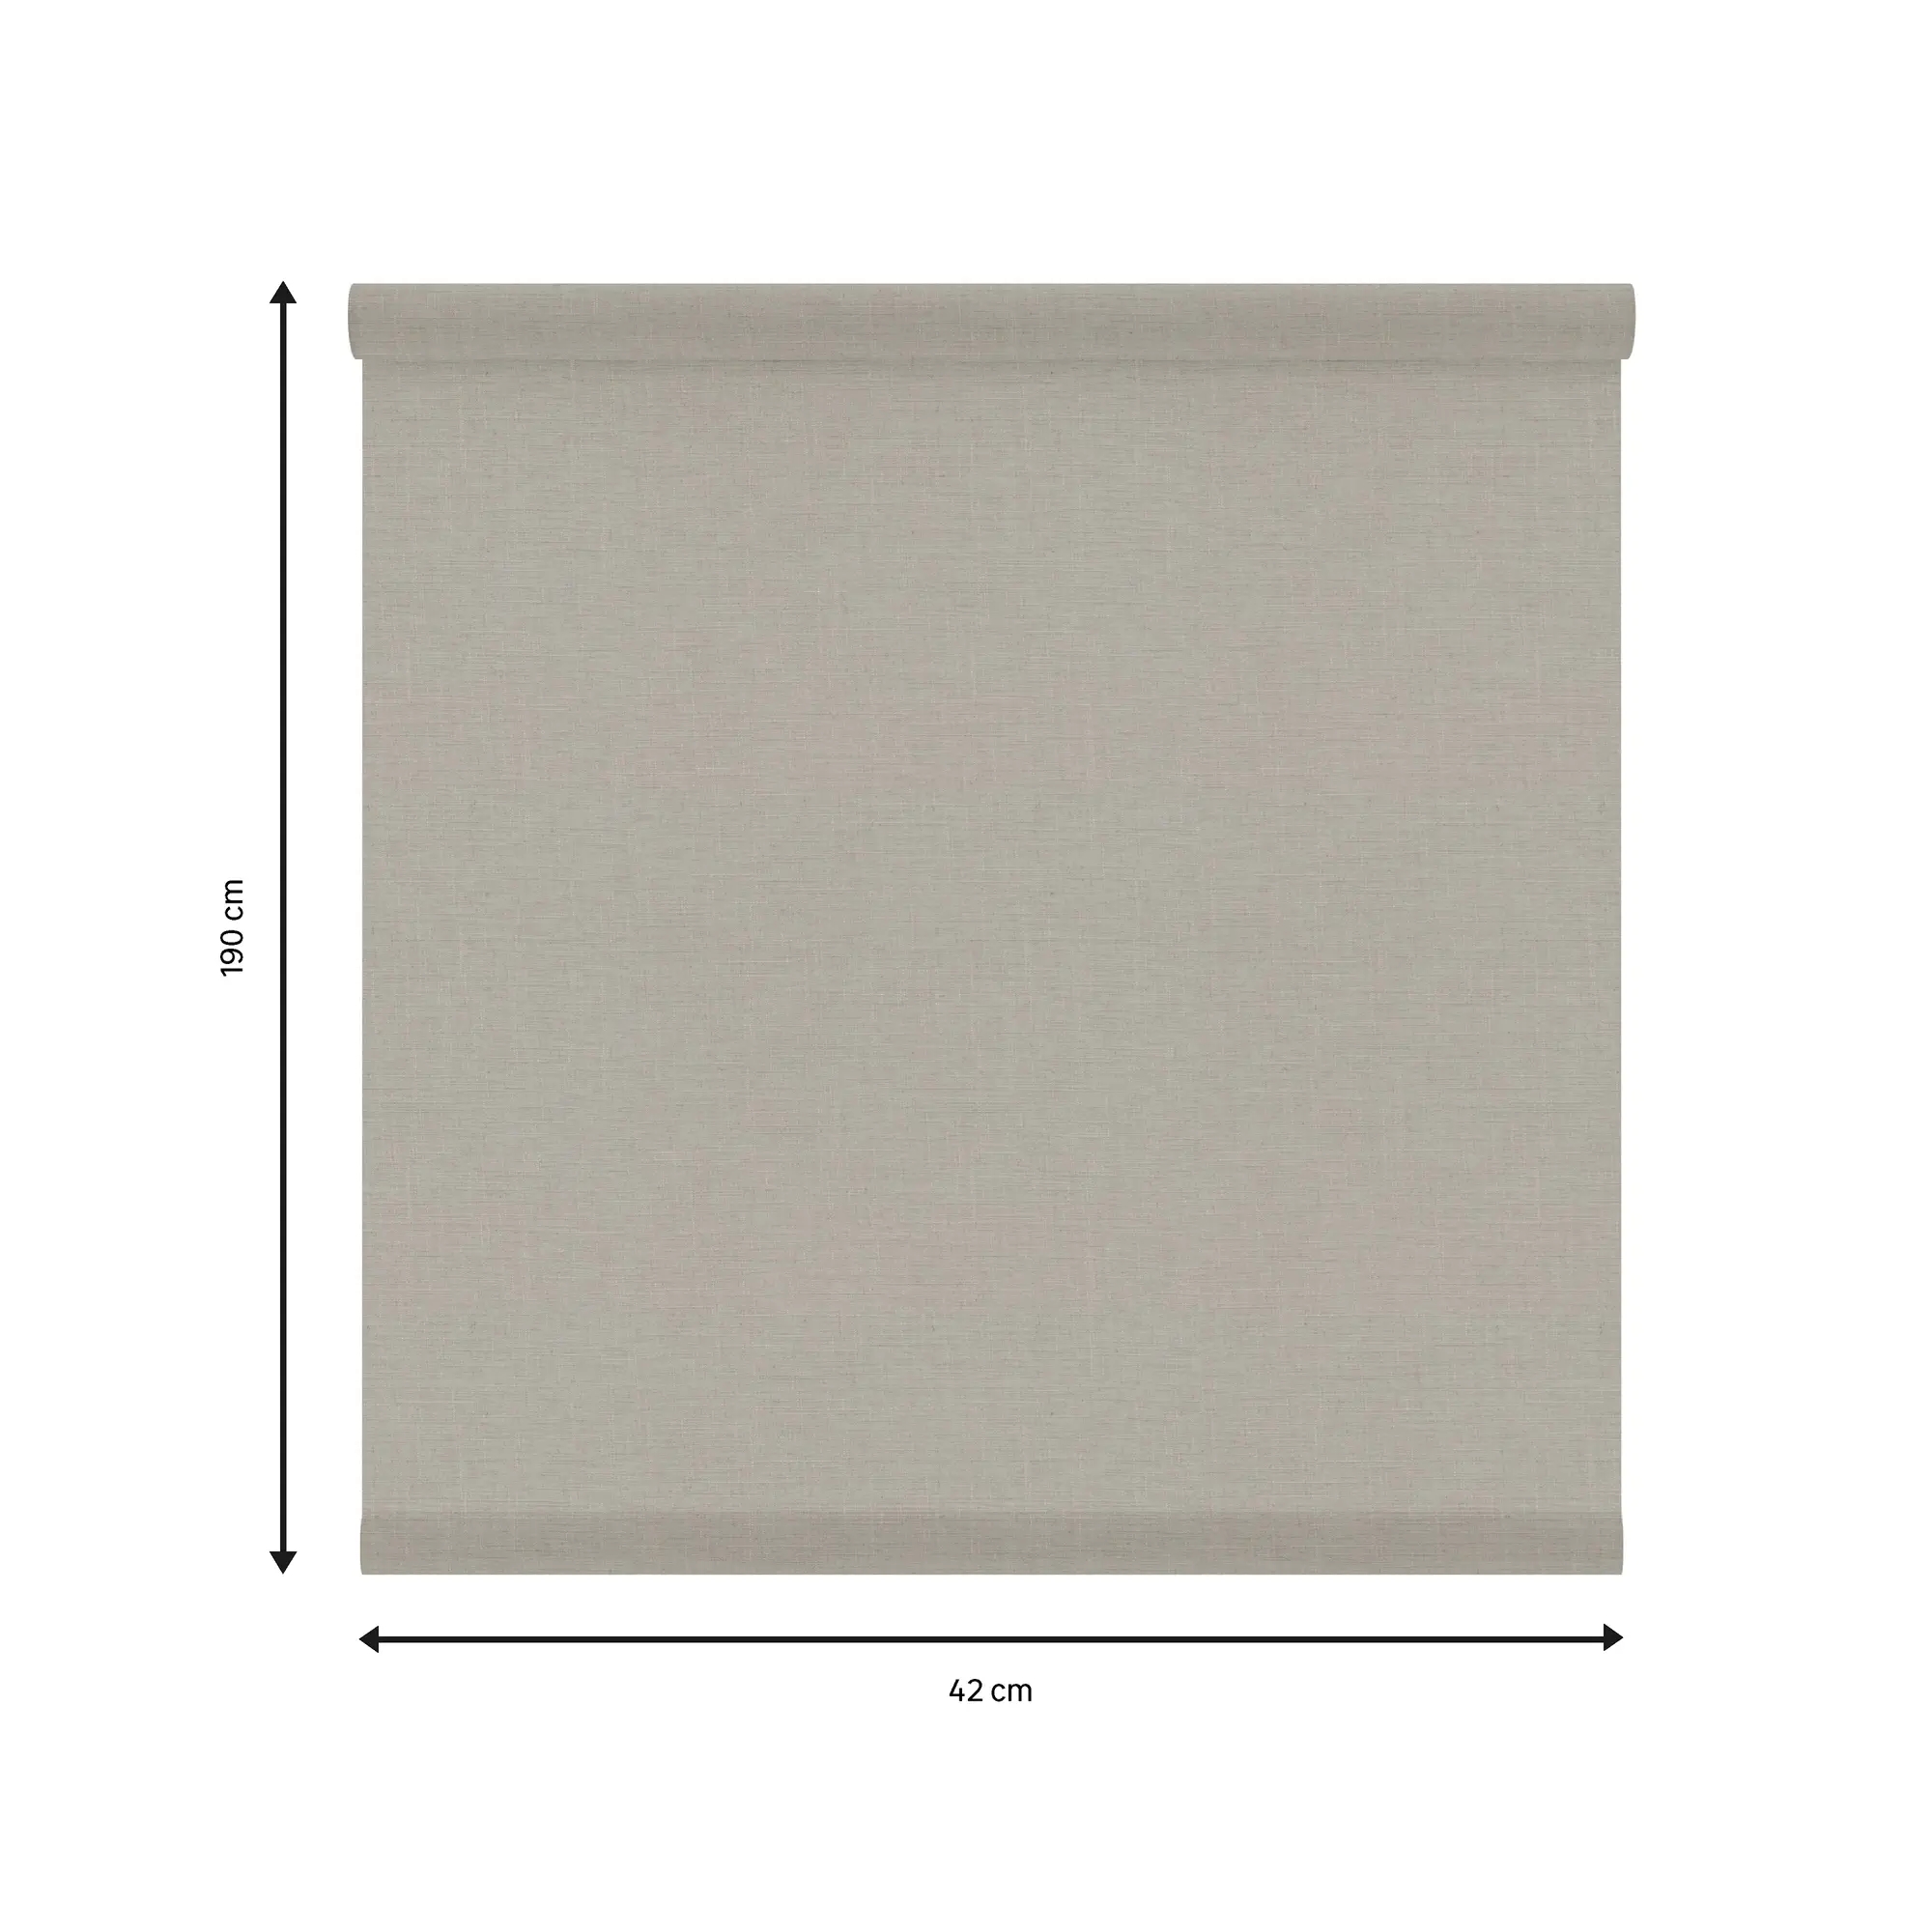 Tessuto per tende a rullo filtrante INSPIRE Brisbane beige 42 x 190 cm - 2